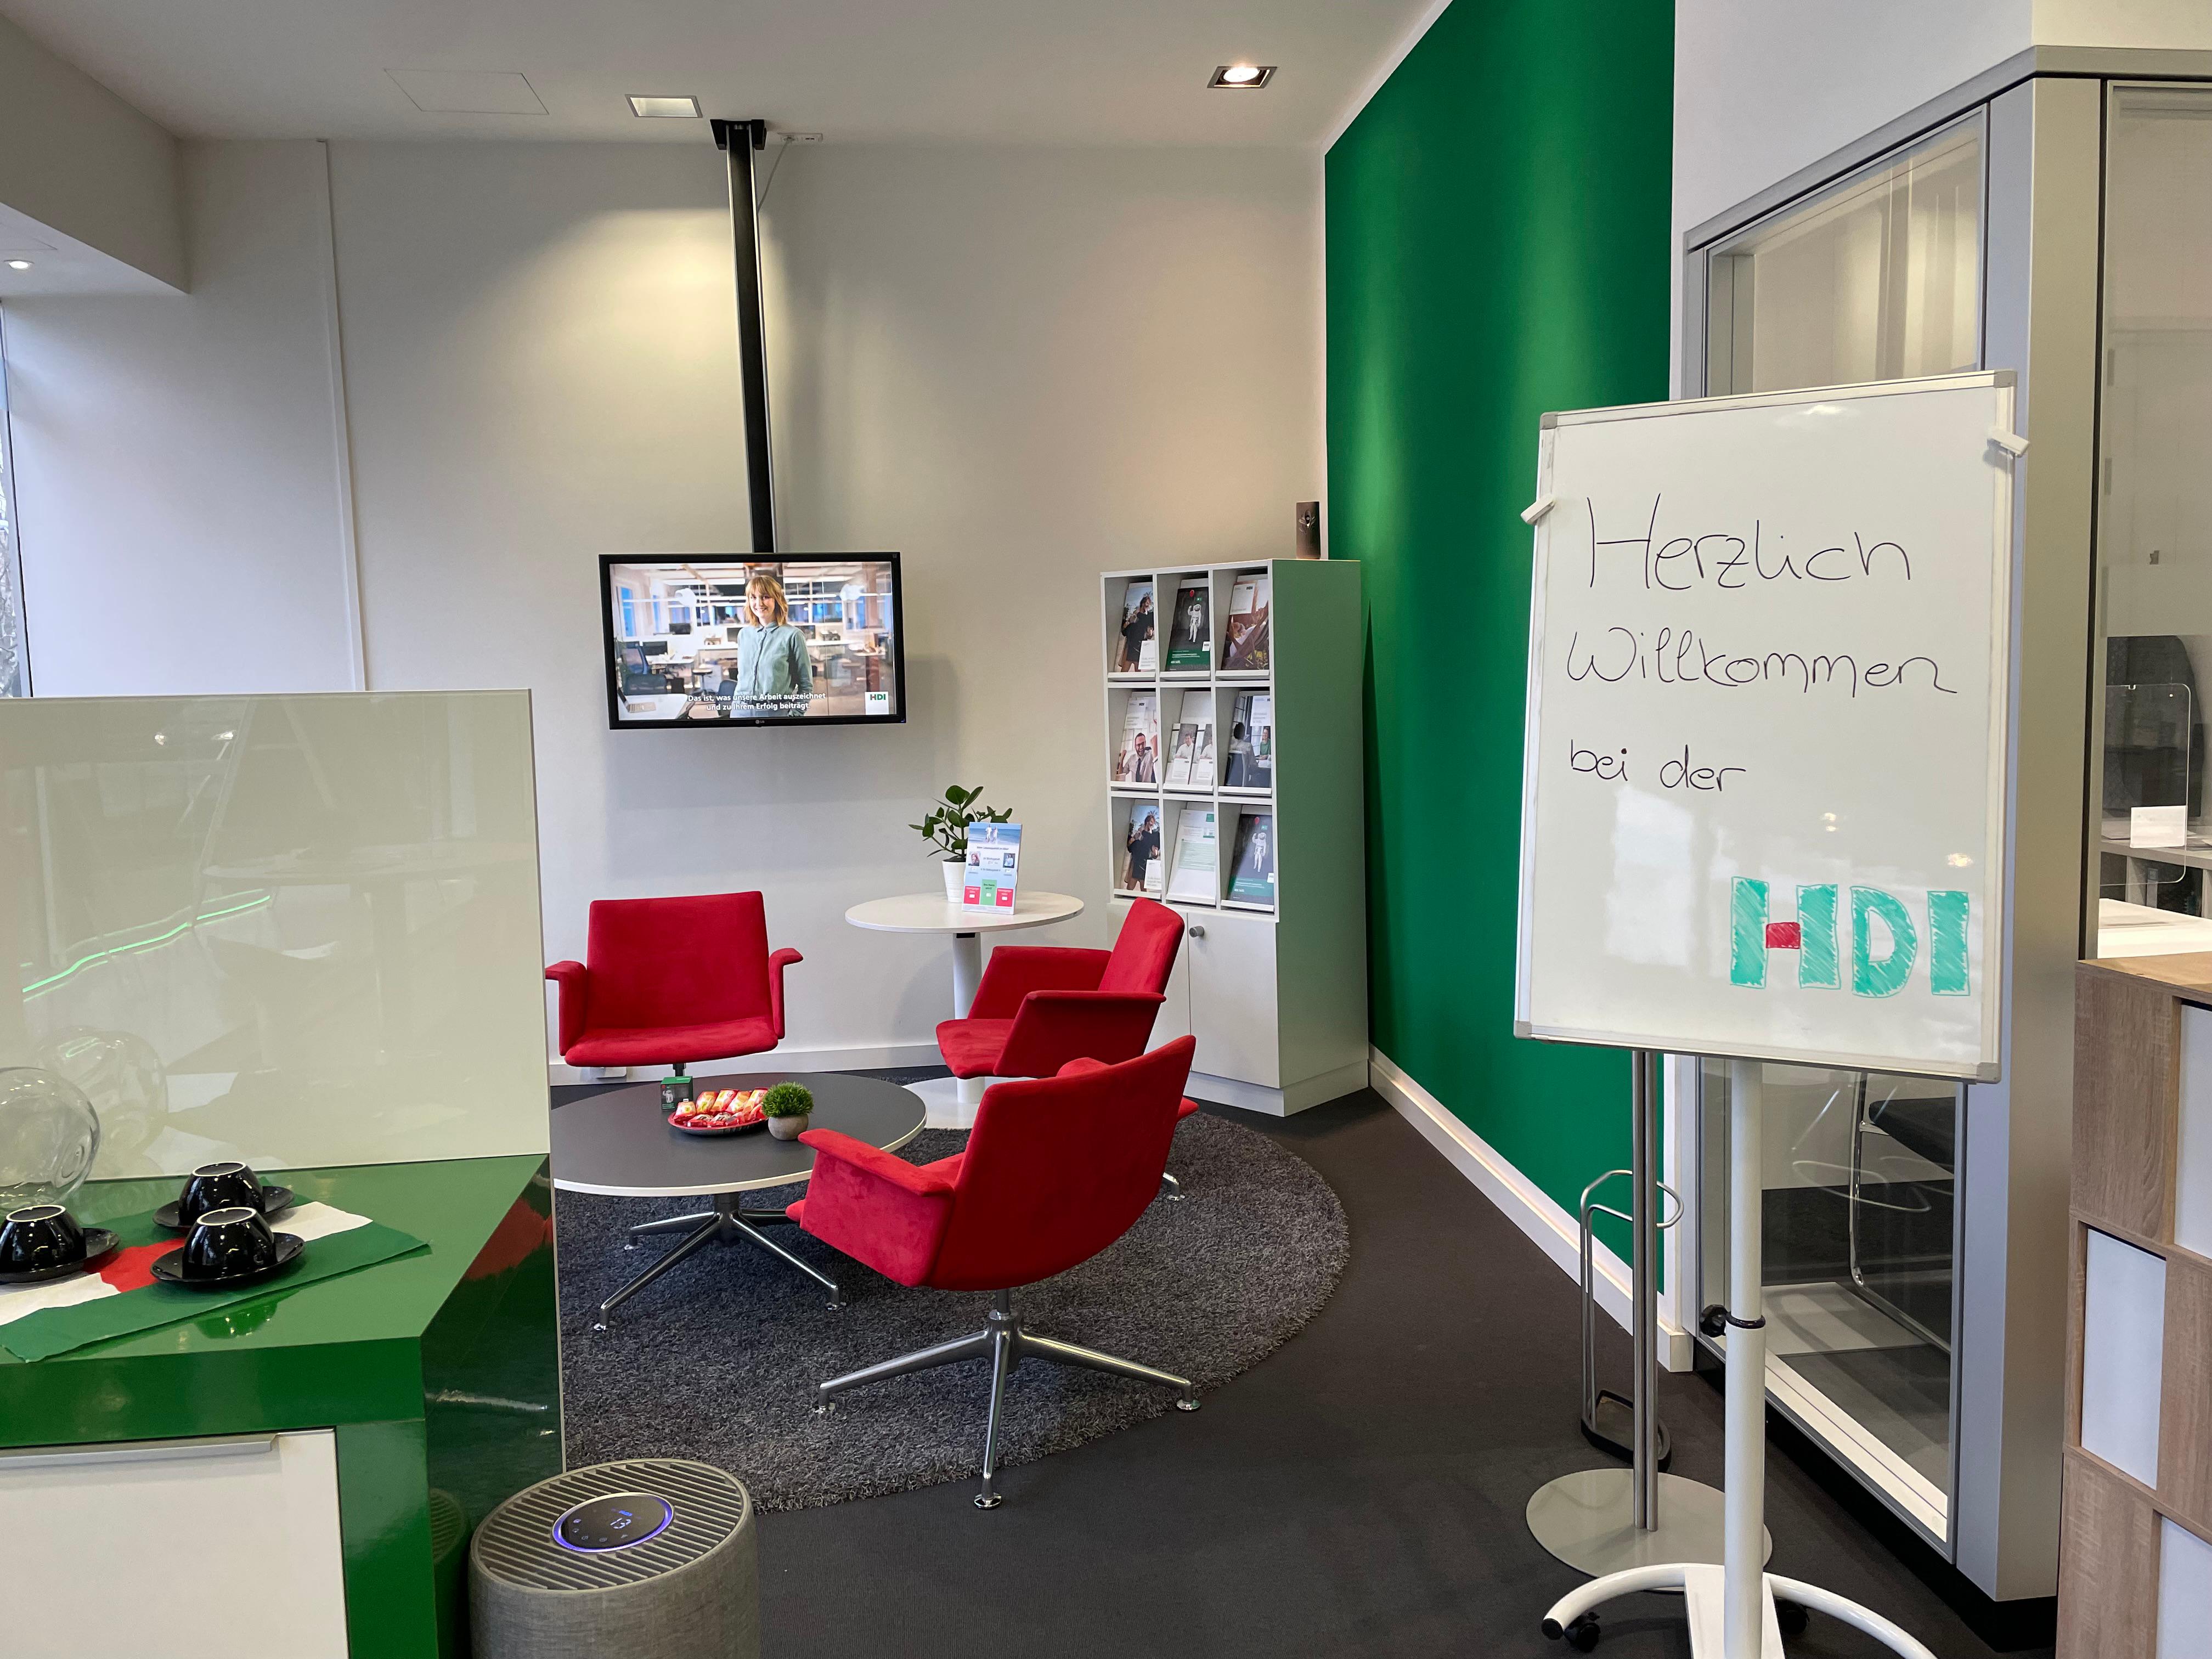 Willkommen in der HDI Agentur Sven Mayer in Essen